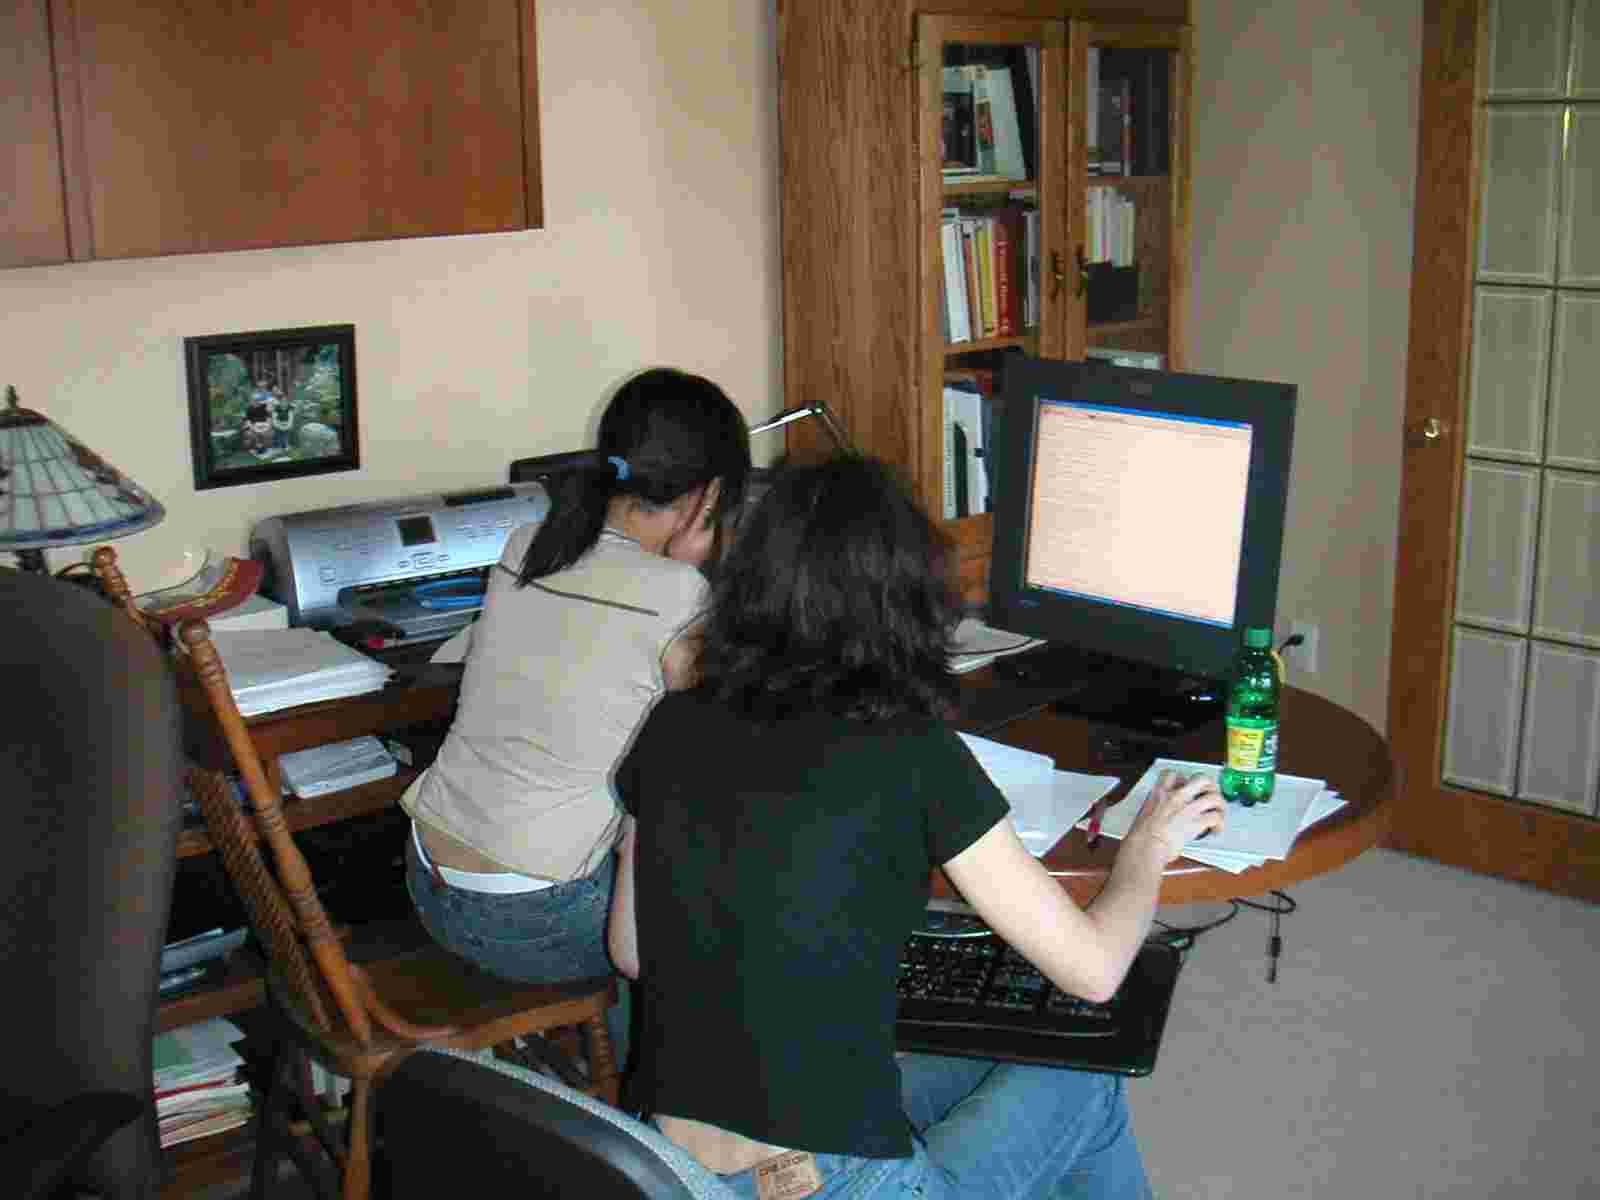 ZhengZheng and Jarka working